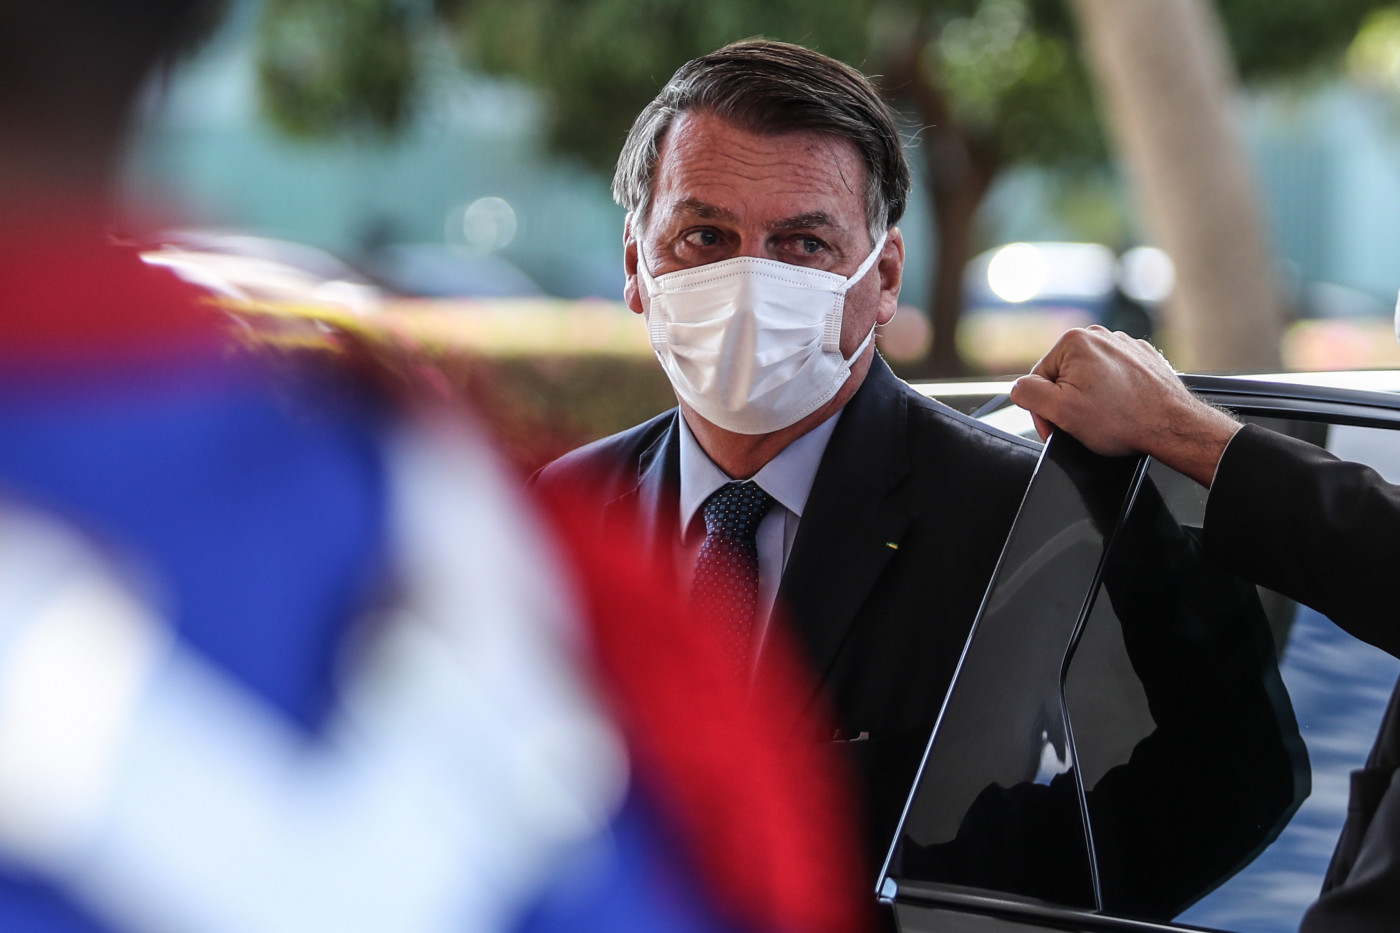 Usando terno preto e máscara branca, Bolsonaro sai de automóvel